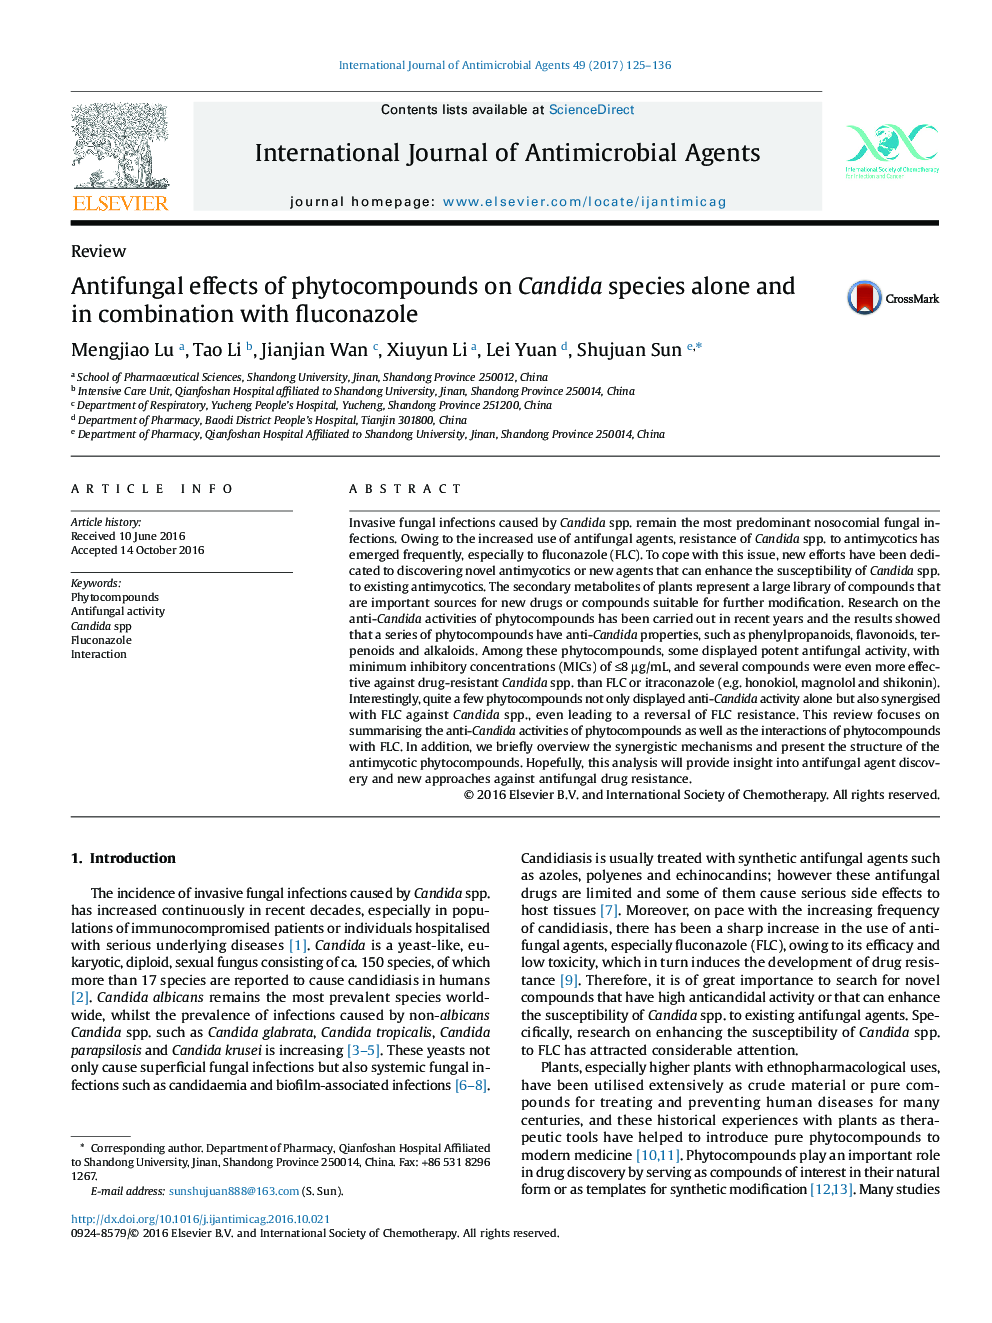 اثرات ضد قارچی فیتوکومپوندها به تنهایی و در ترکیب با فلوکونازول بر روی گونه های کاندیدا 